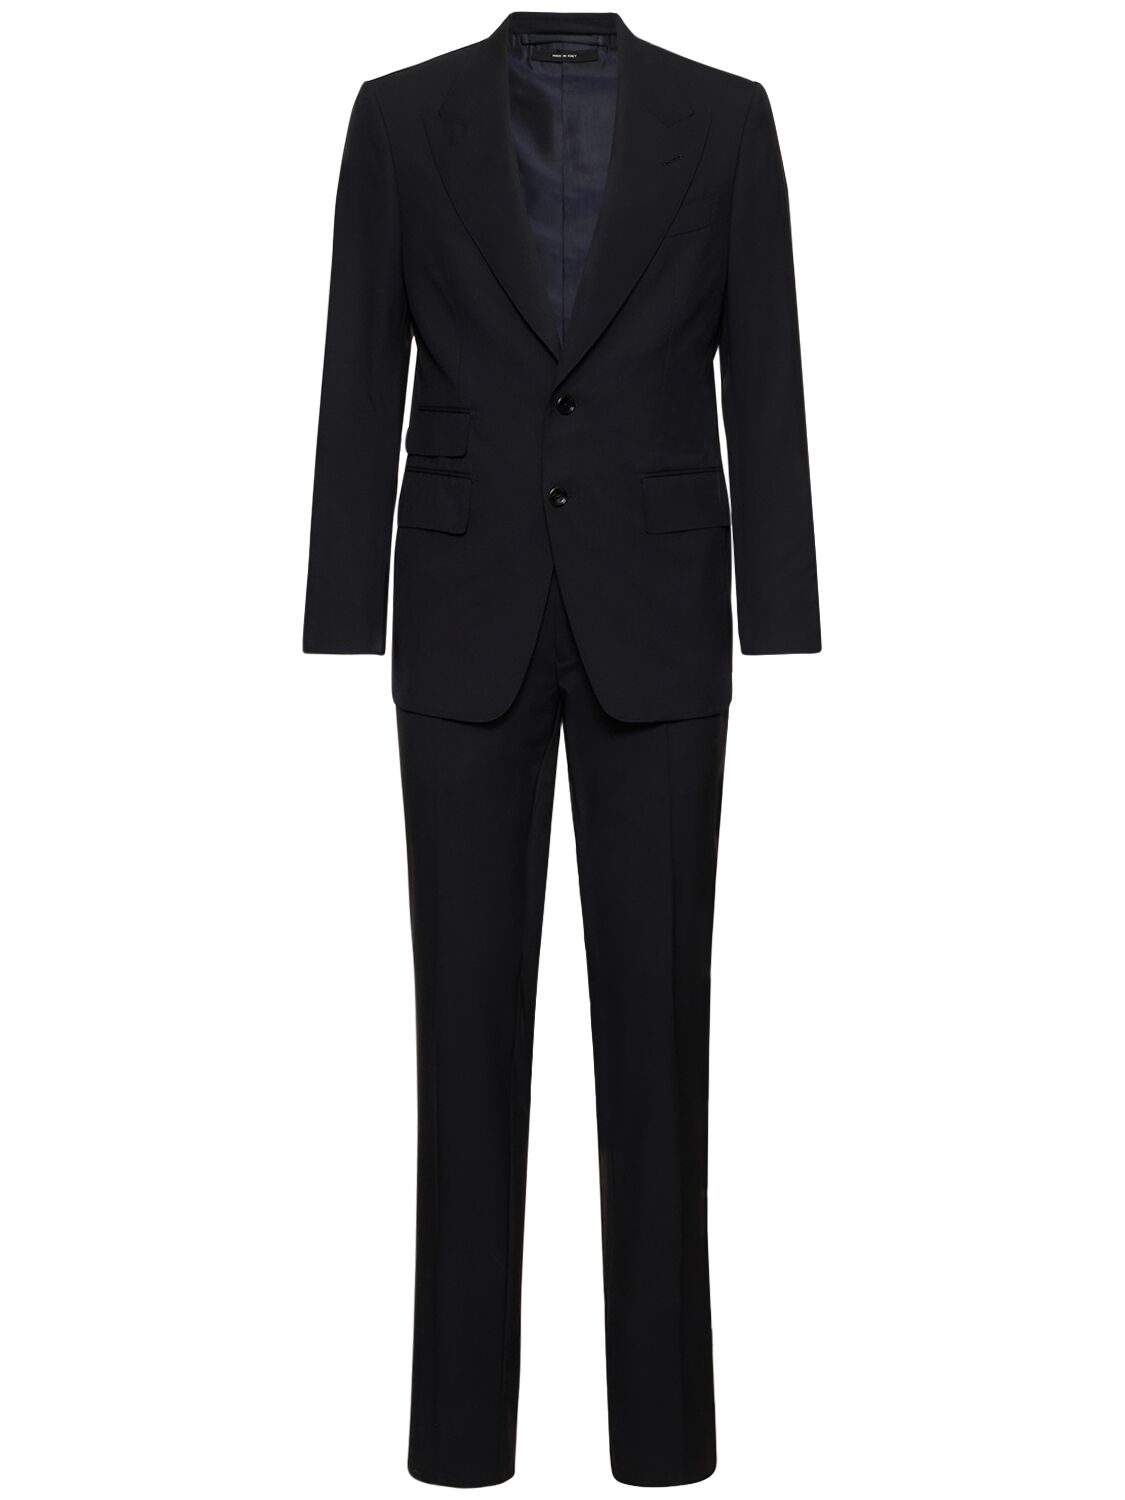 Shelton Super 120's Plain Weave Suit